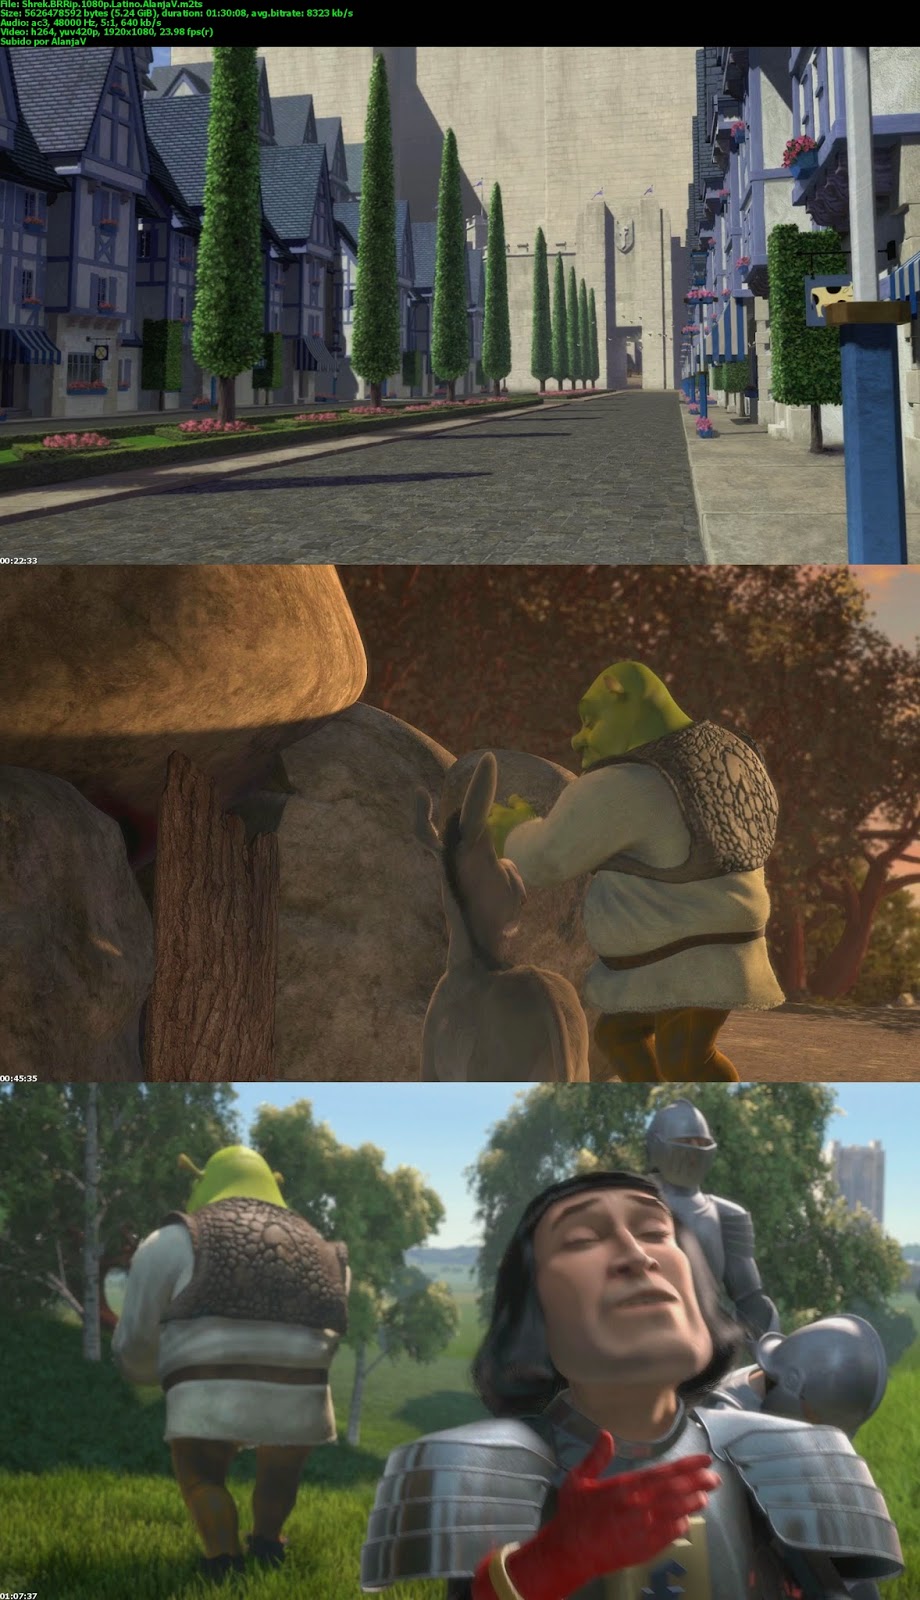 Shrek.BRRip.1080p.Latino.AlanjaV_s.jpg